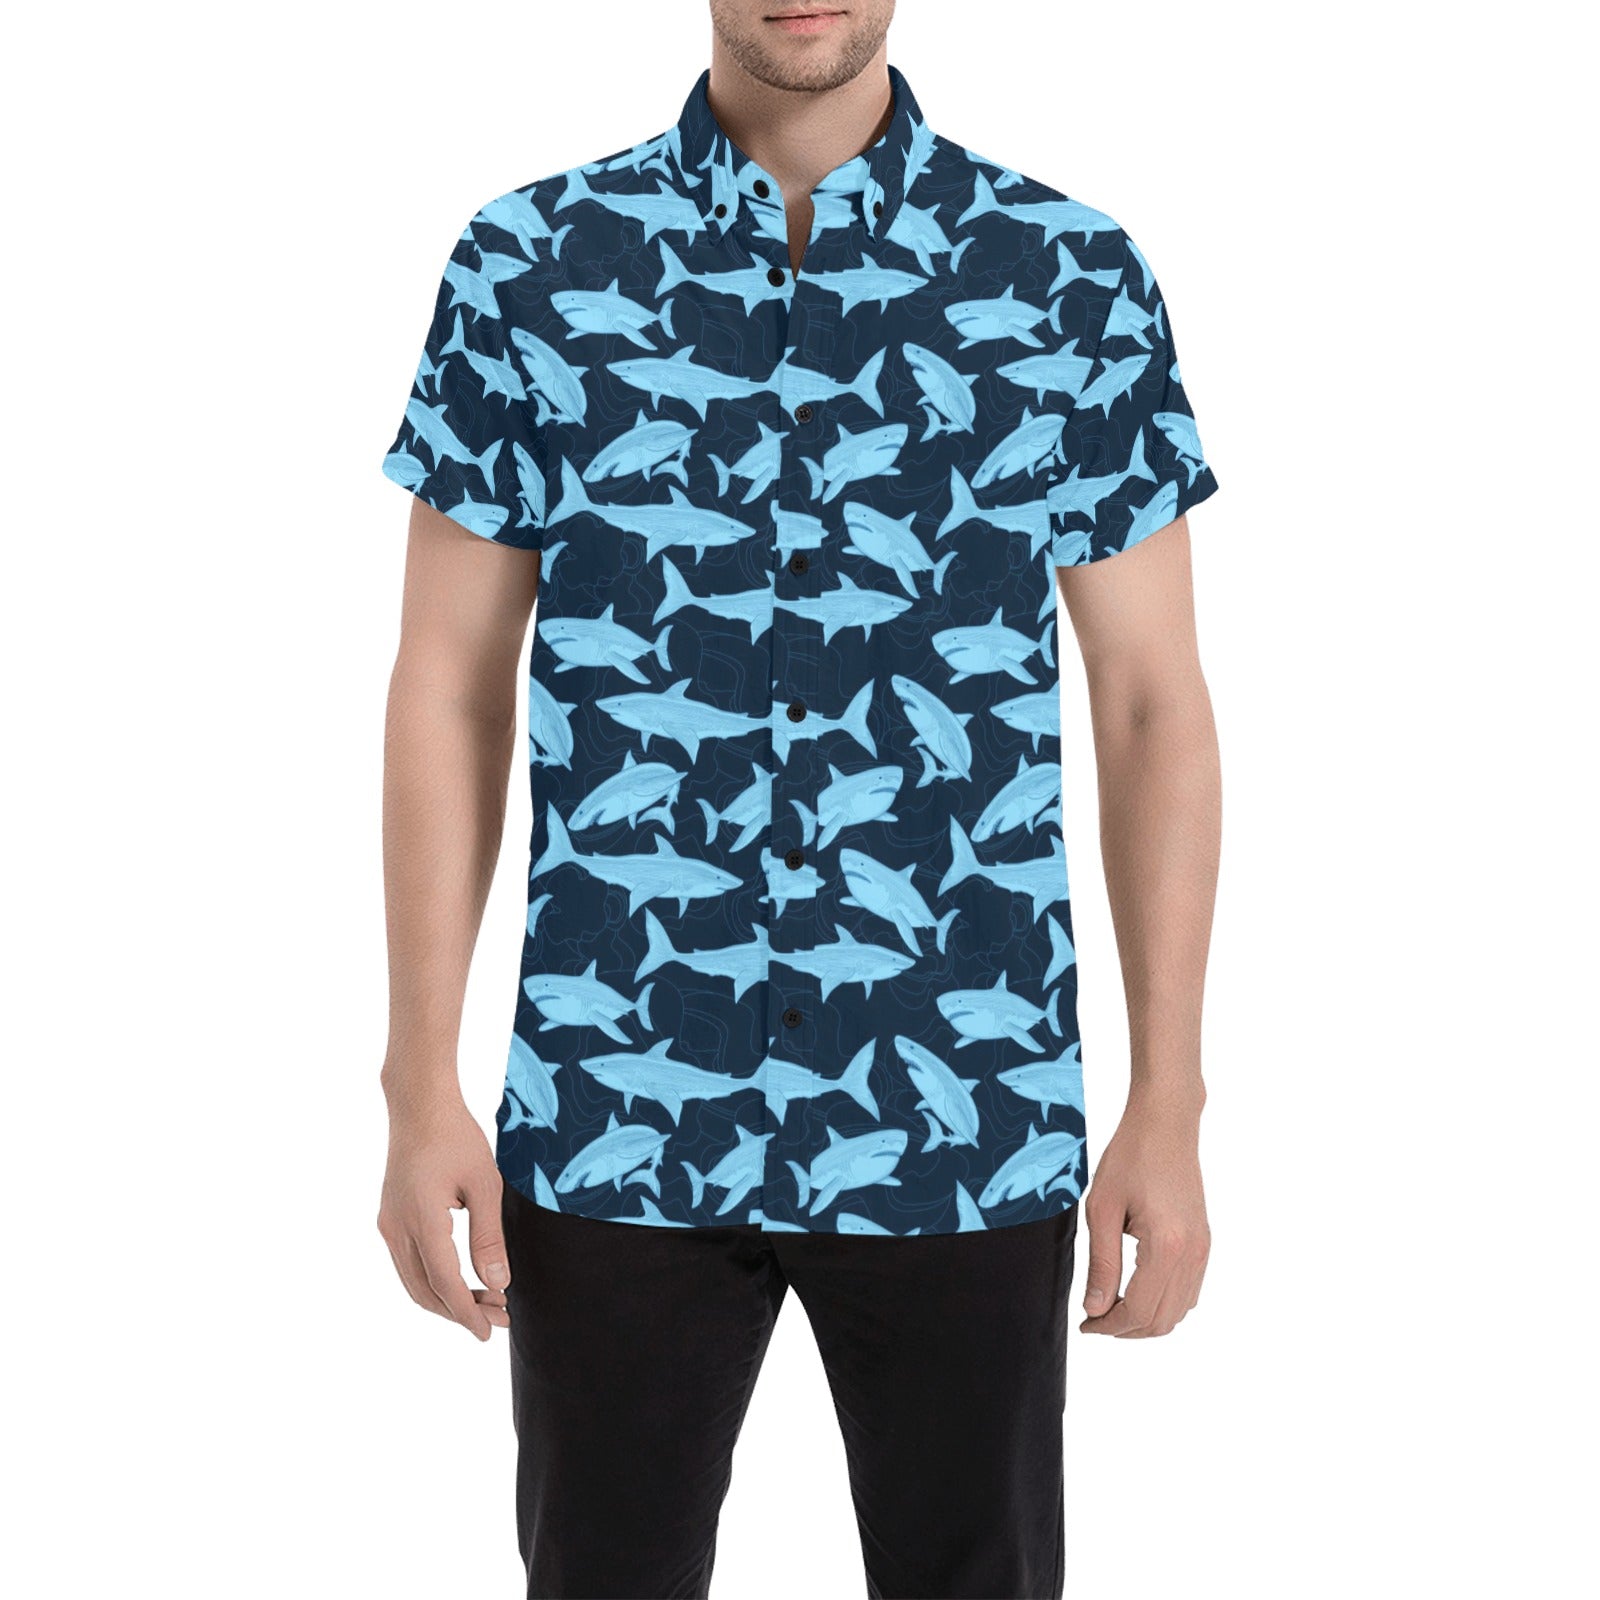 Shark Short Sleeve Men Button Up Shirt, Fish Blue Print Casual Buttoned Down Summer Dress Shirt Gift Husband XXXL